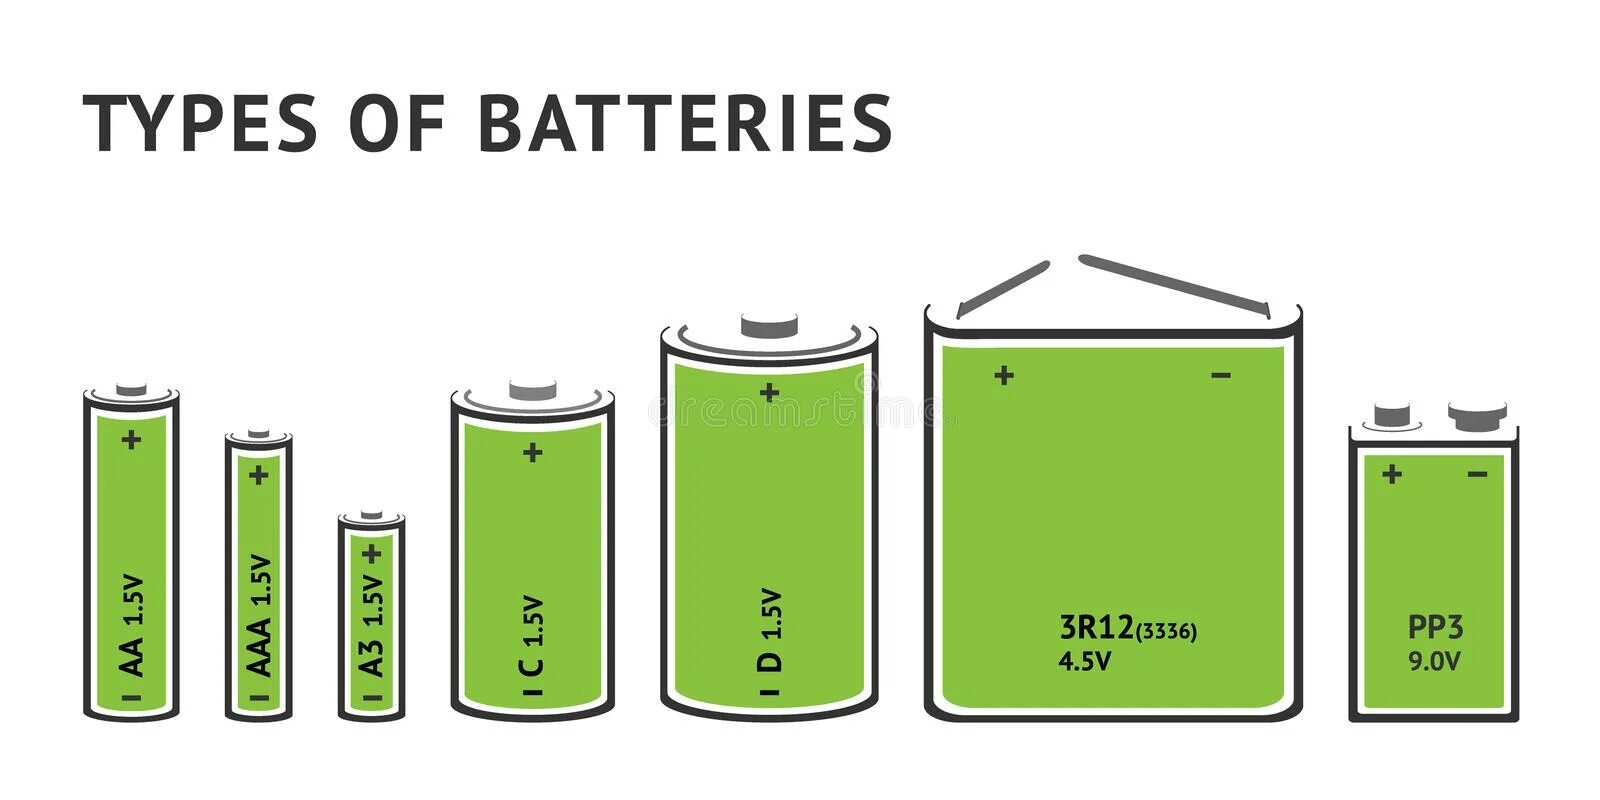 Types of Batteries. Battery Type vector. Картинка со списком видов батареек. Аккумуляторы vector 65.